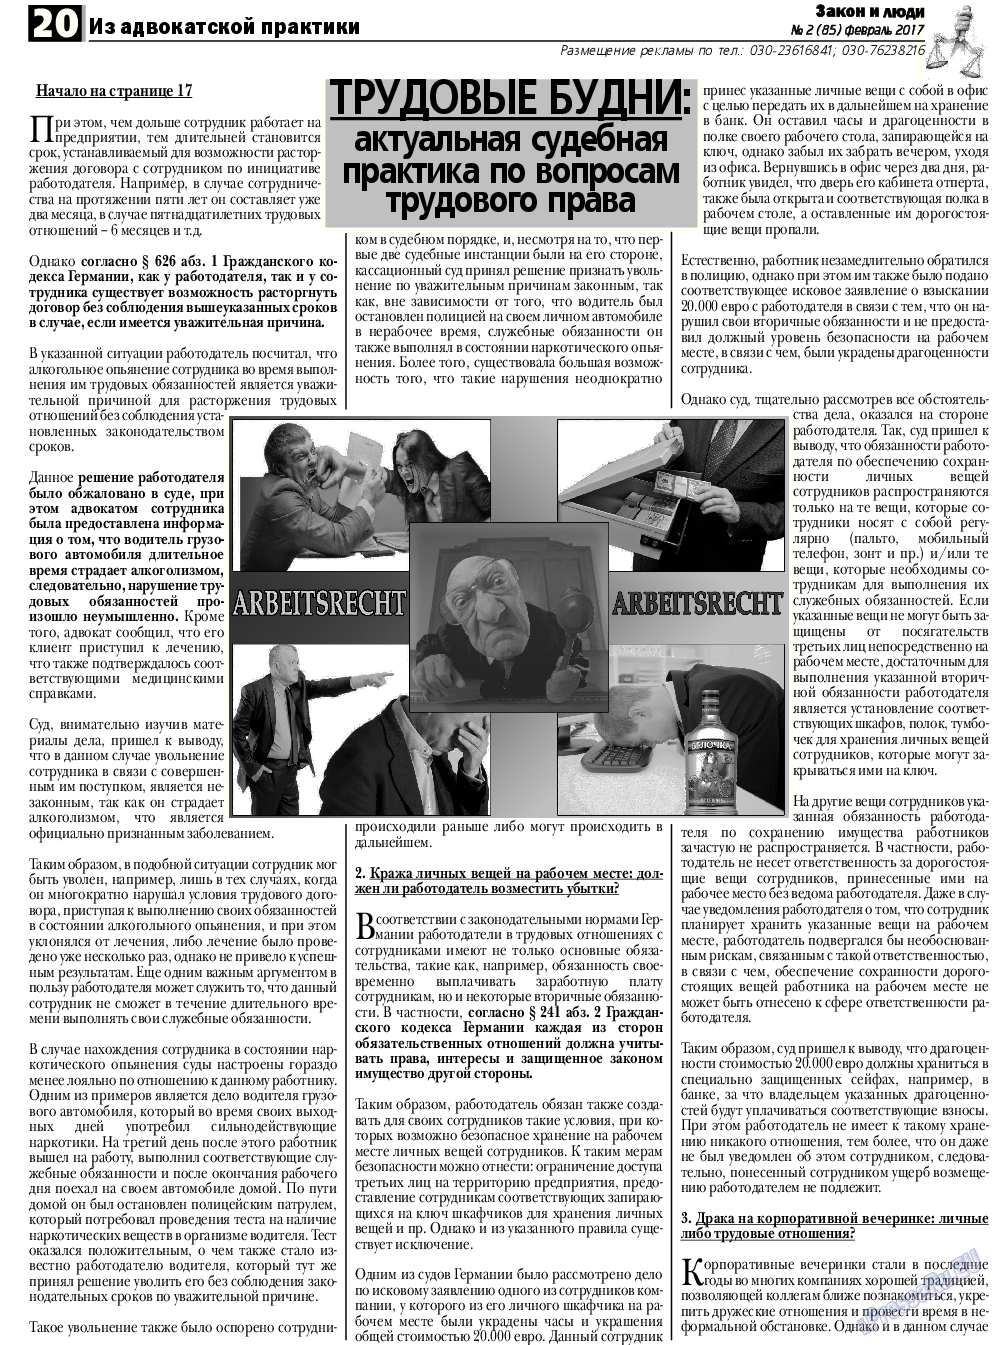 Закон и люди, газета. 2017 №2 стр.20